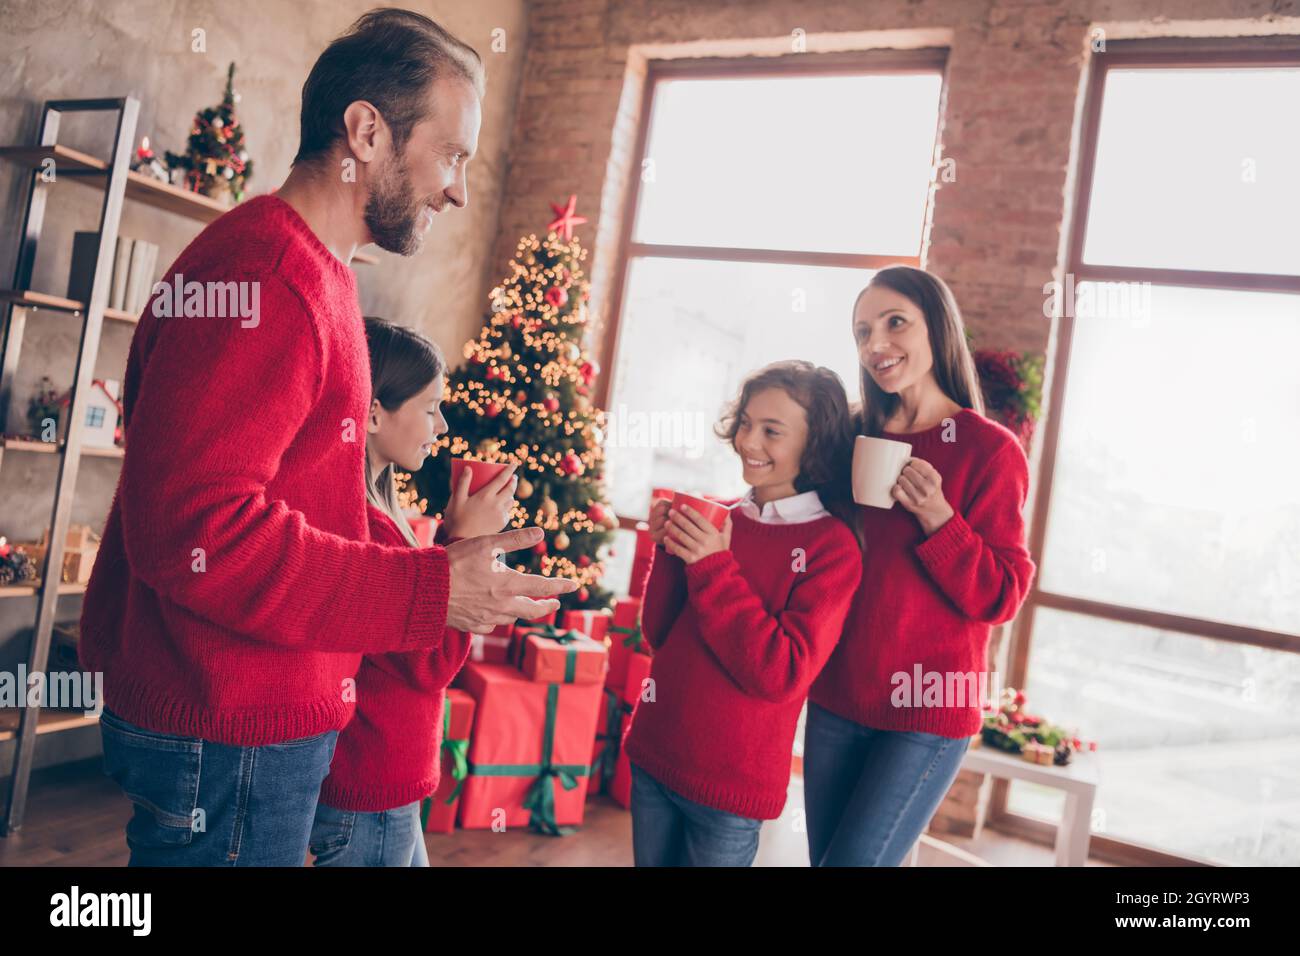 Foto von positiven verträumten Familie halten Tasse trinken Tee Kakao immergrünen Baum Girlande in dekorierten Weihnachten Zuhause drinnen Stockfoto